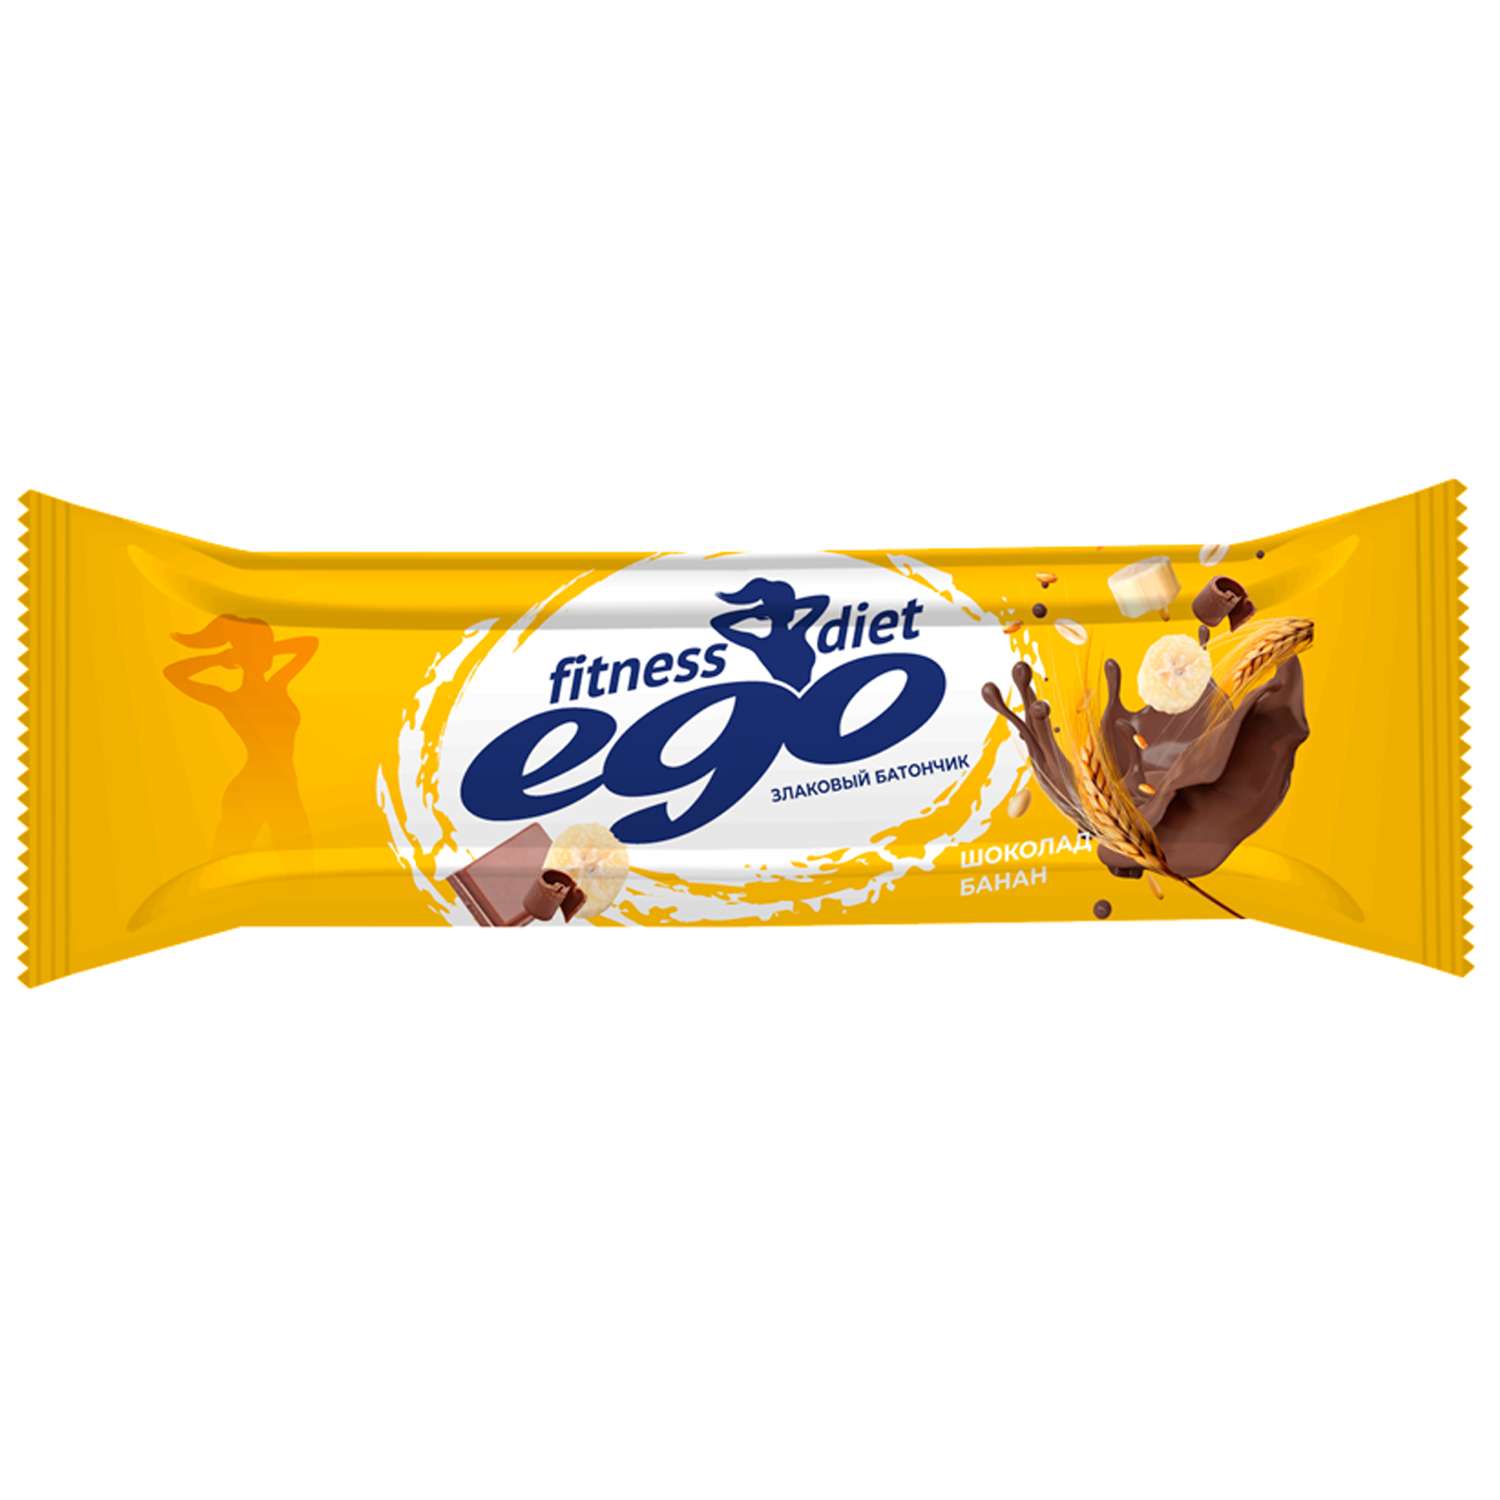 Батончик злаковый Ego fitness гранола-банан с молочным шоколадом с витаминами и железом 27г - фото 1